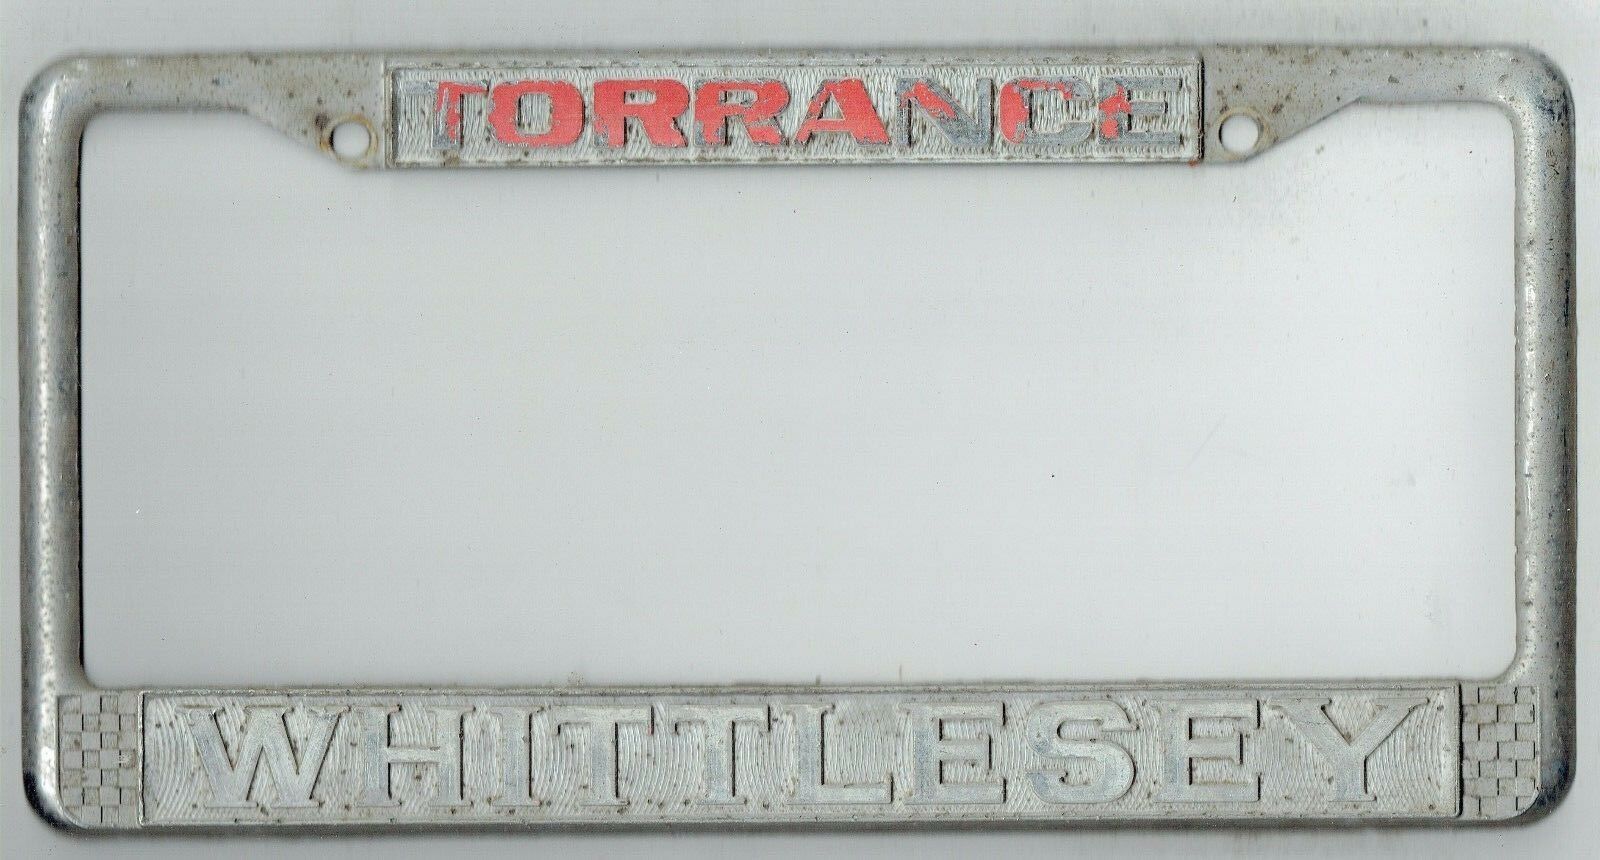 Rare Torrance California Whittlesey Jaguar Vintage Dealer License Plate Frame